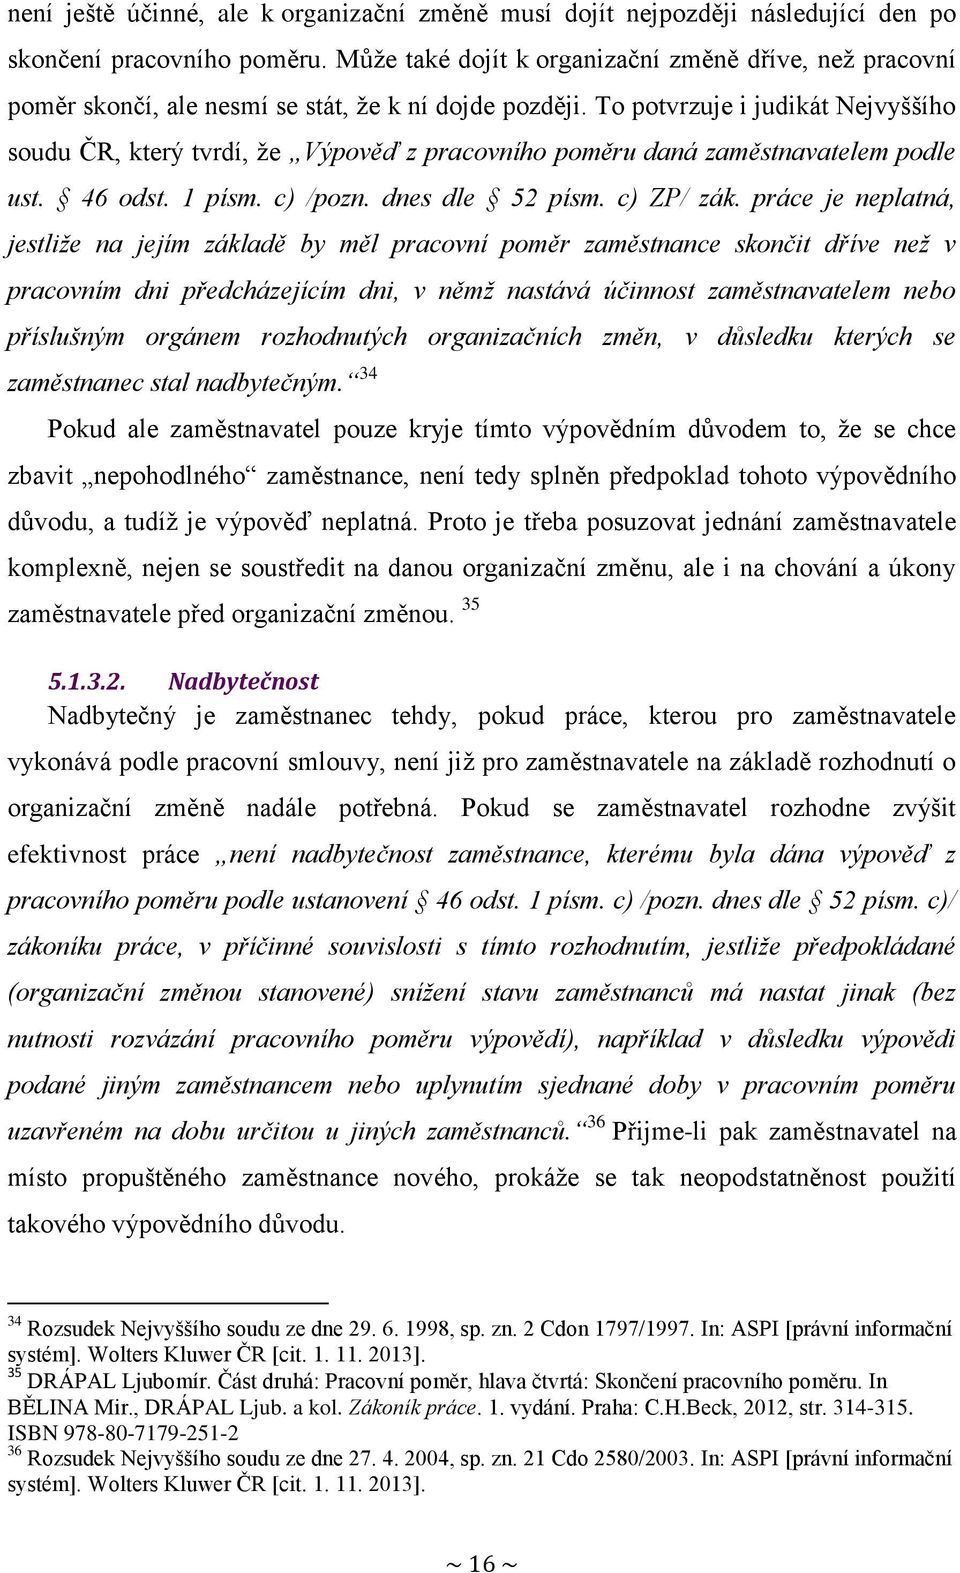 To potvrzuje i judikát Nejvyššího soudu ČR, který tvrdí, že Výpověď z pracovního poměru daná zaměstnavatelem podle ust. 46 odst. 1 písm. c) /pozn. dnes dle 52 písm. c) ZP/ zák.